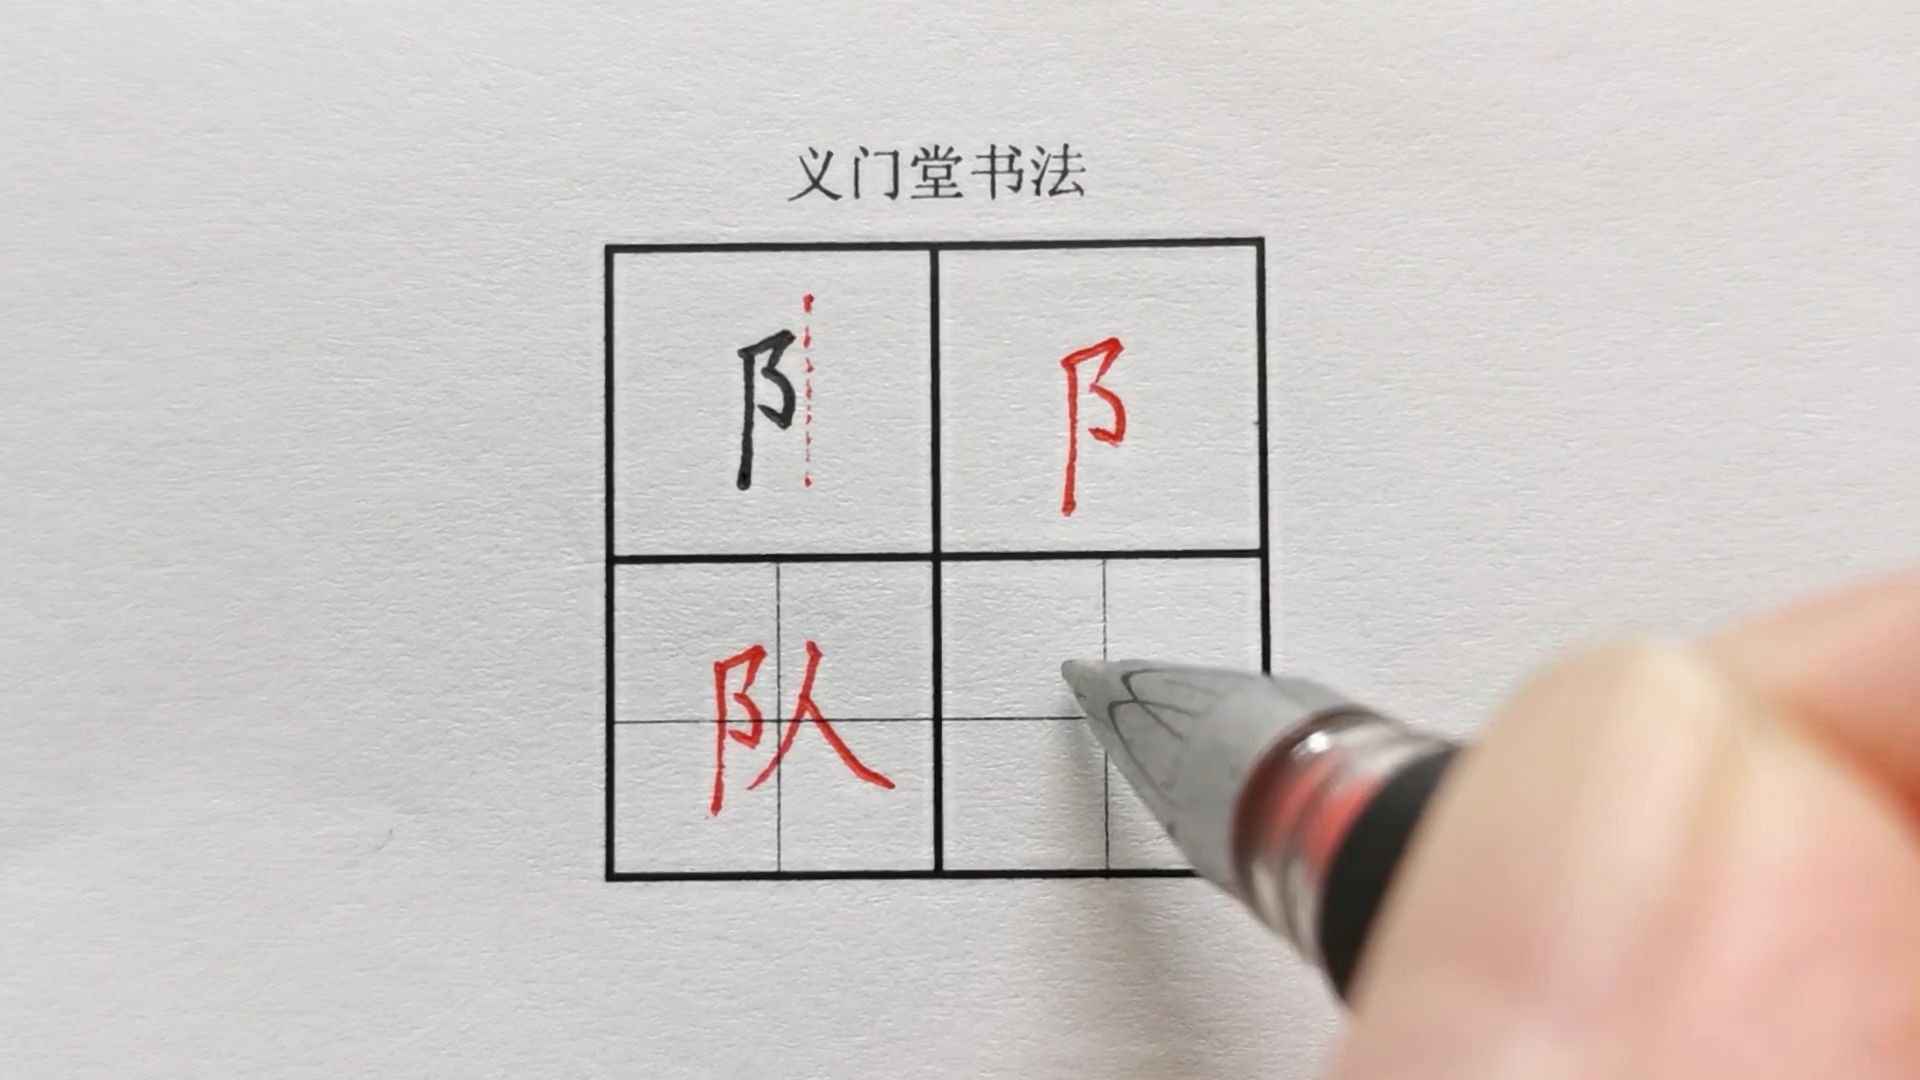 【练字视频】硬笔书法写字教程:楷书偏旁部首